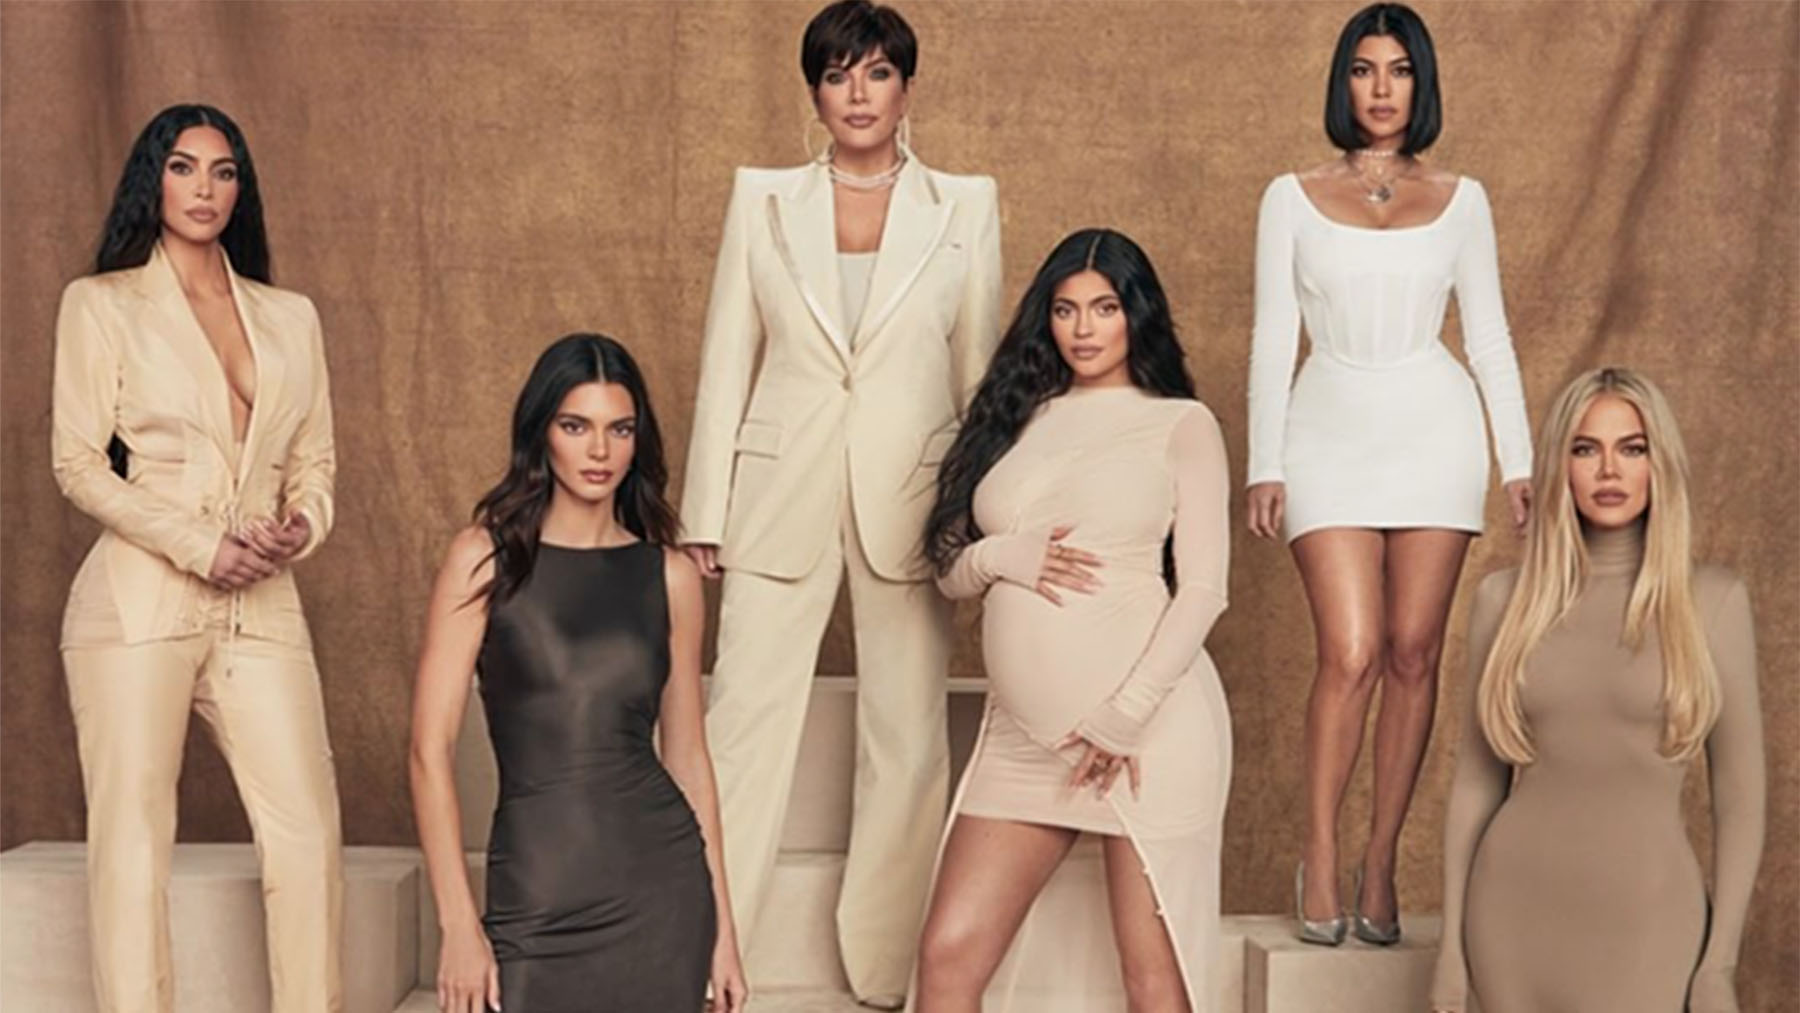 Quién es quién en la familia Kardashian-Jenner